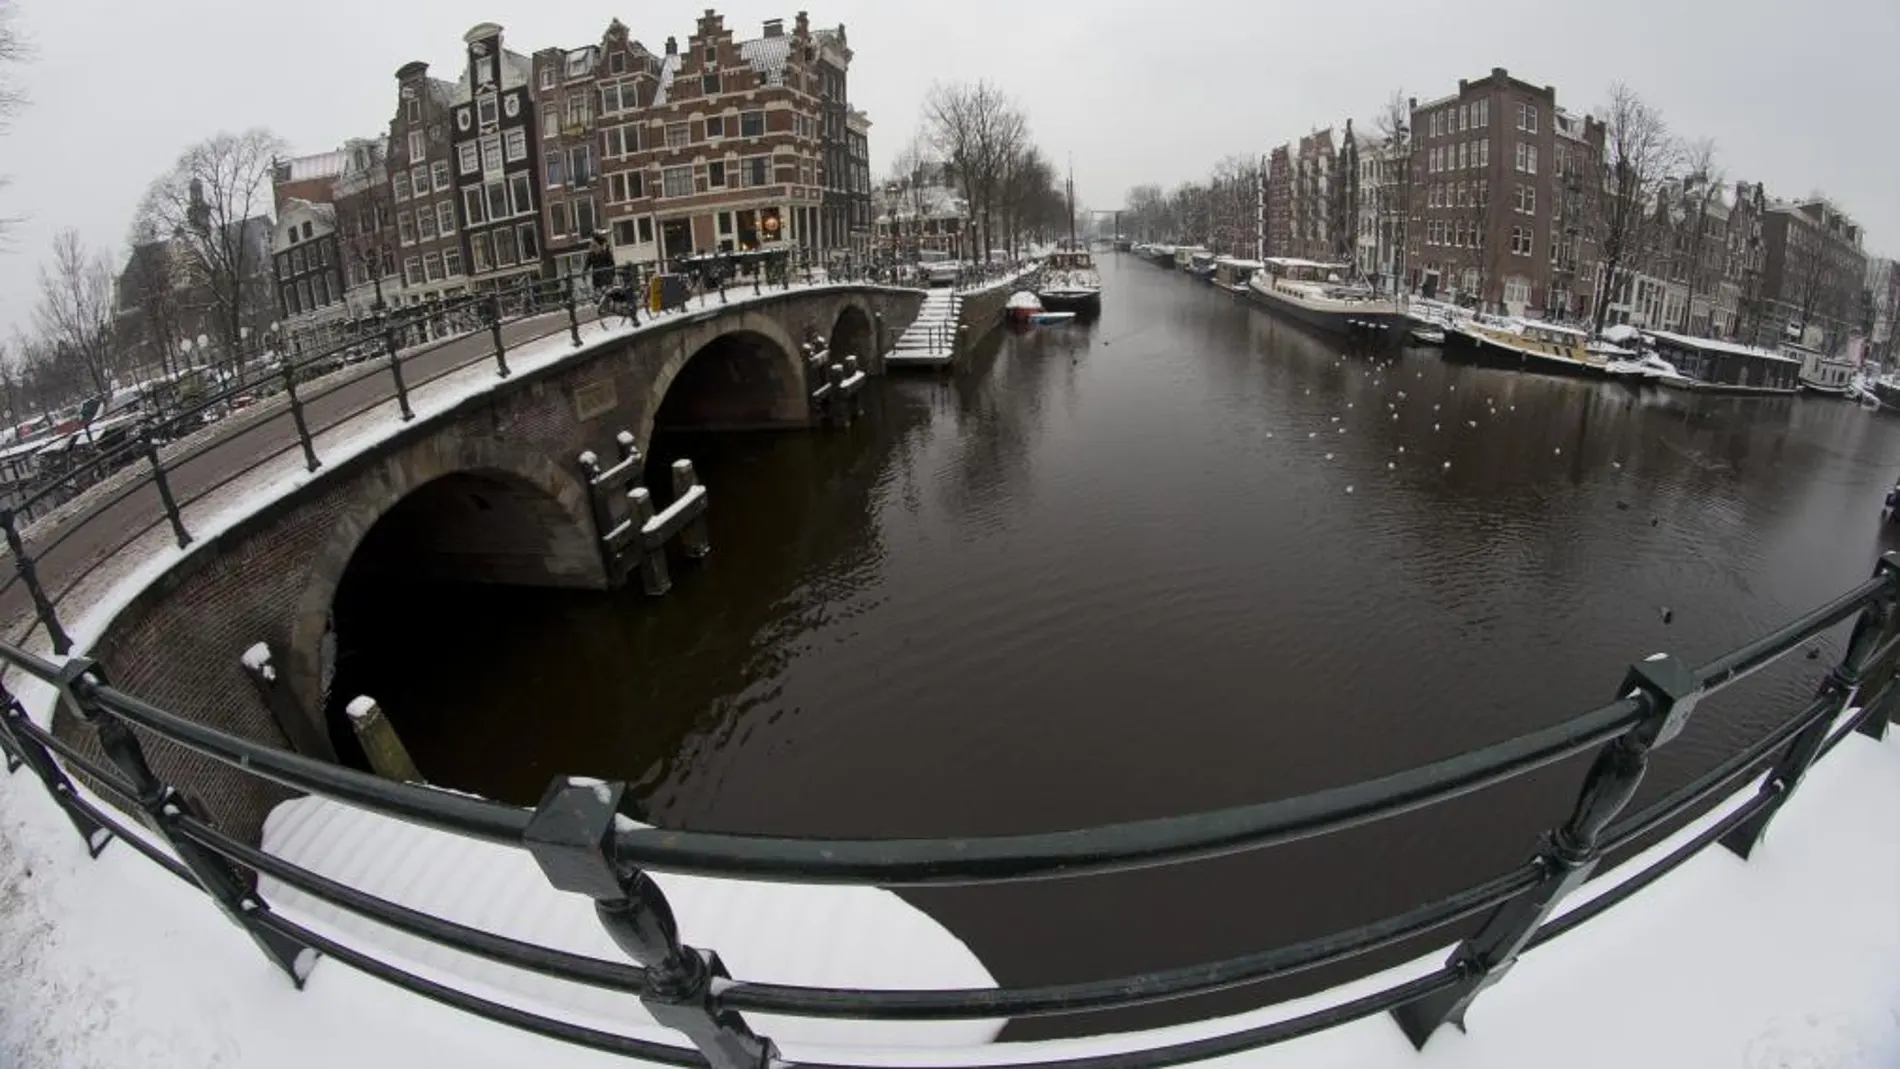 Vista del canal de Brouwersgracht en el centro de Amsterdam, el 21 de enero de 2013. (AP Photo/Peter Dejong)